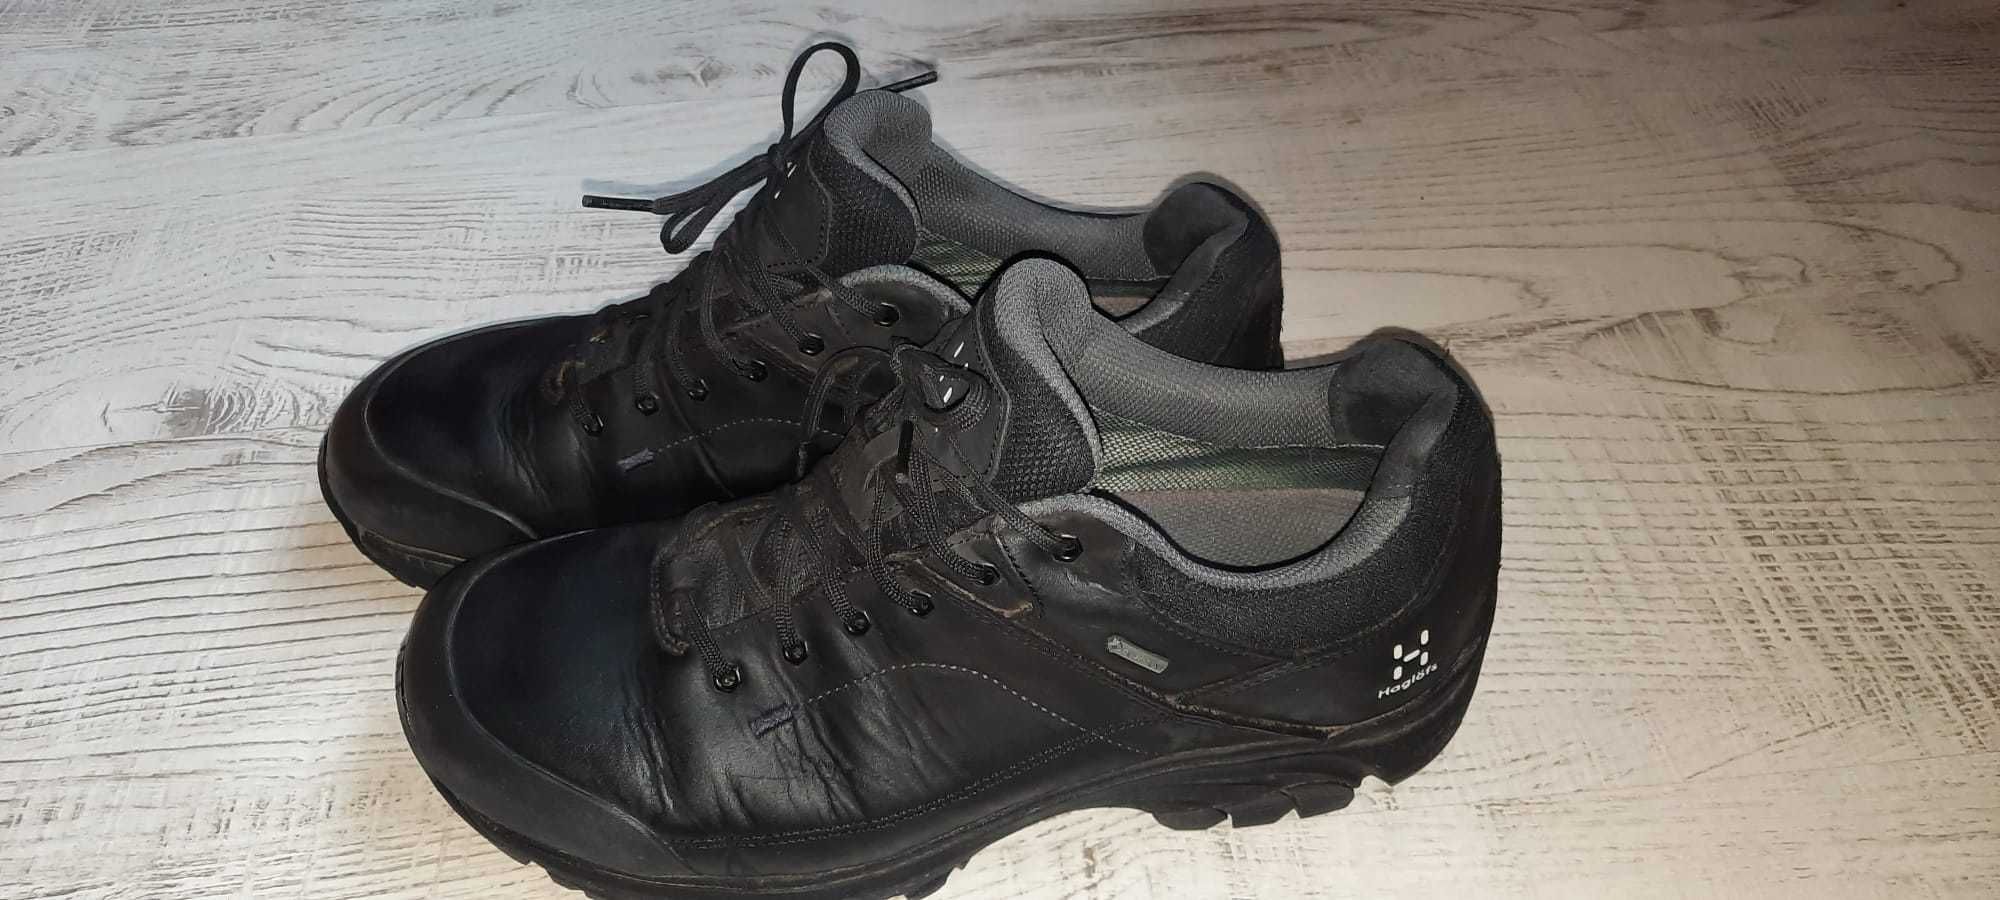 Туристически обувки Haglöfs 42.5 , 27.2 см